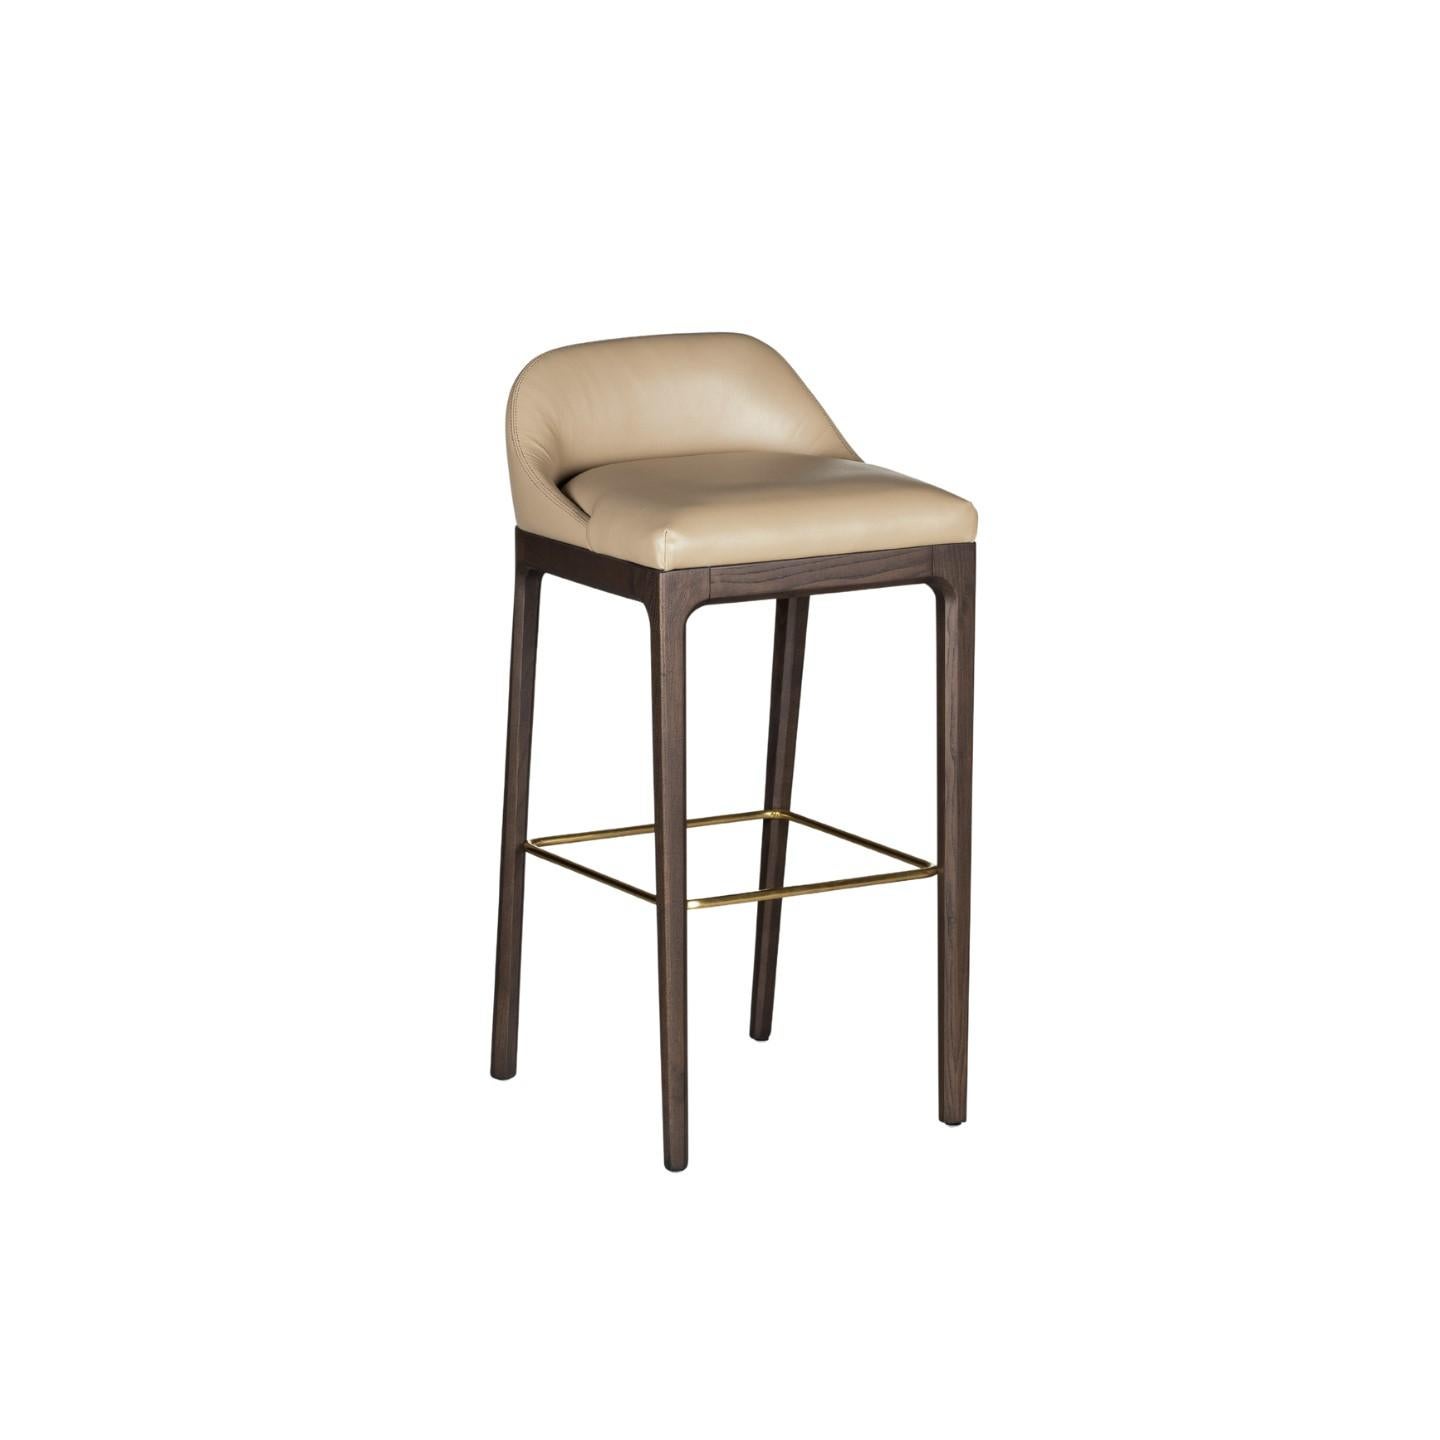 Tabouret de bar Bellagio de style contemporain en bois de frêne avec assise rembourrée en cuir ou en tissu, et repose-pieds en laiton.
Design Libero Rutilo